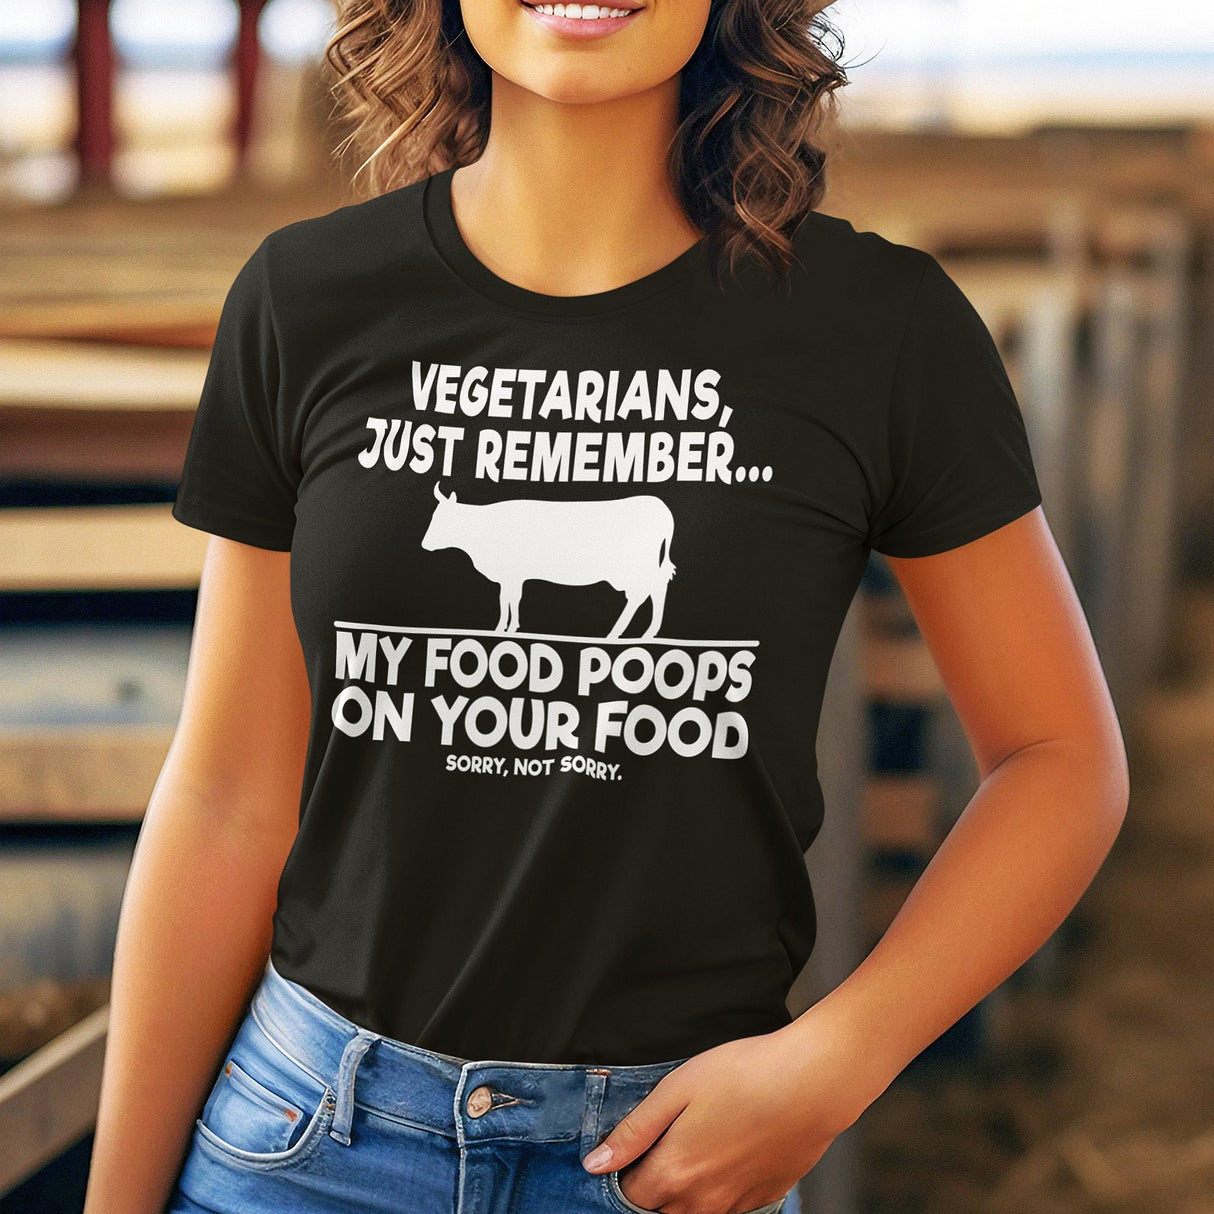 vegetarians-just-remember-my-food-poops-on-your-food-food-tee-humor-t-shirt-foodie-tee-vegetarian-t-shirt-carnivore-tee#color_black